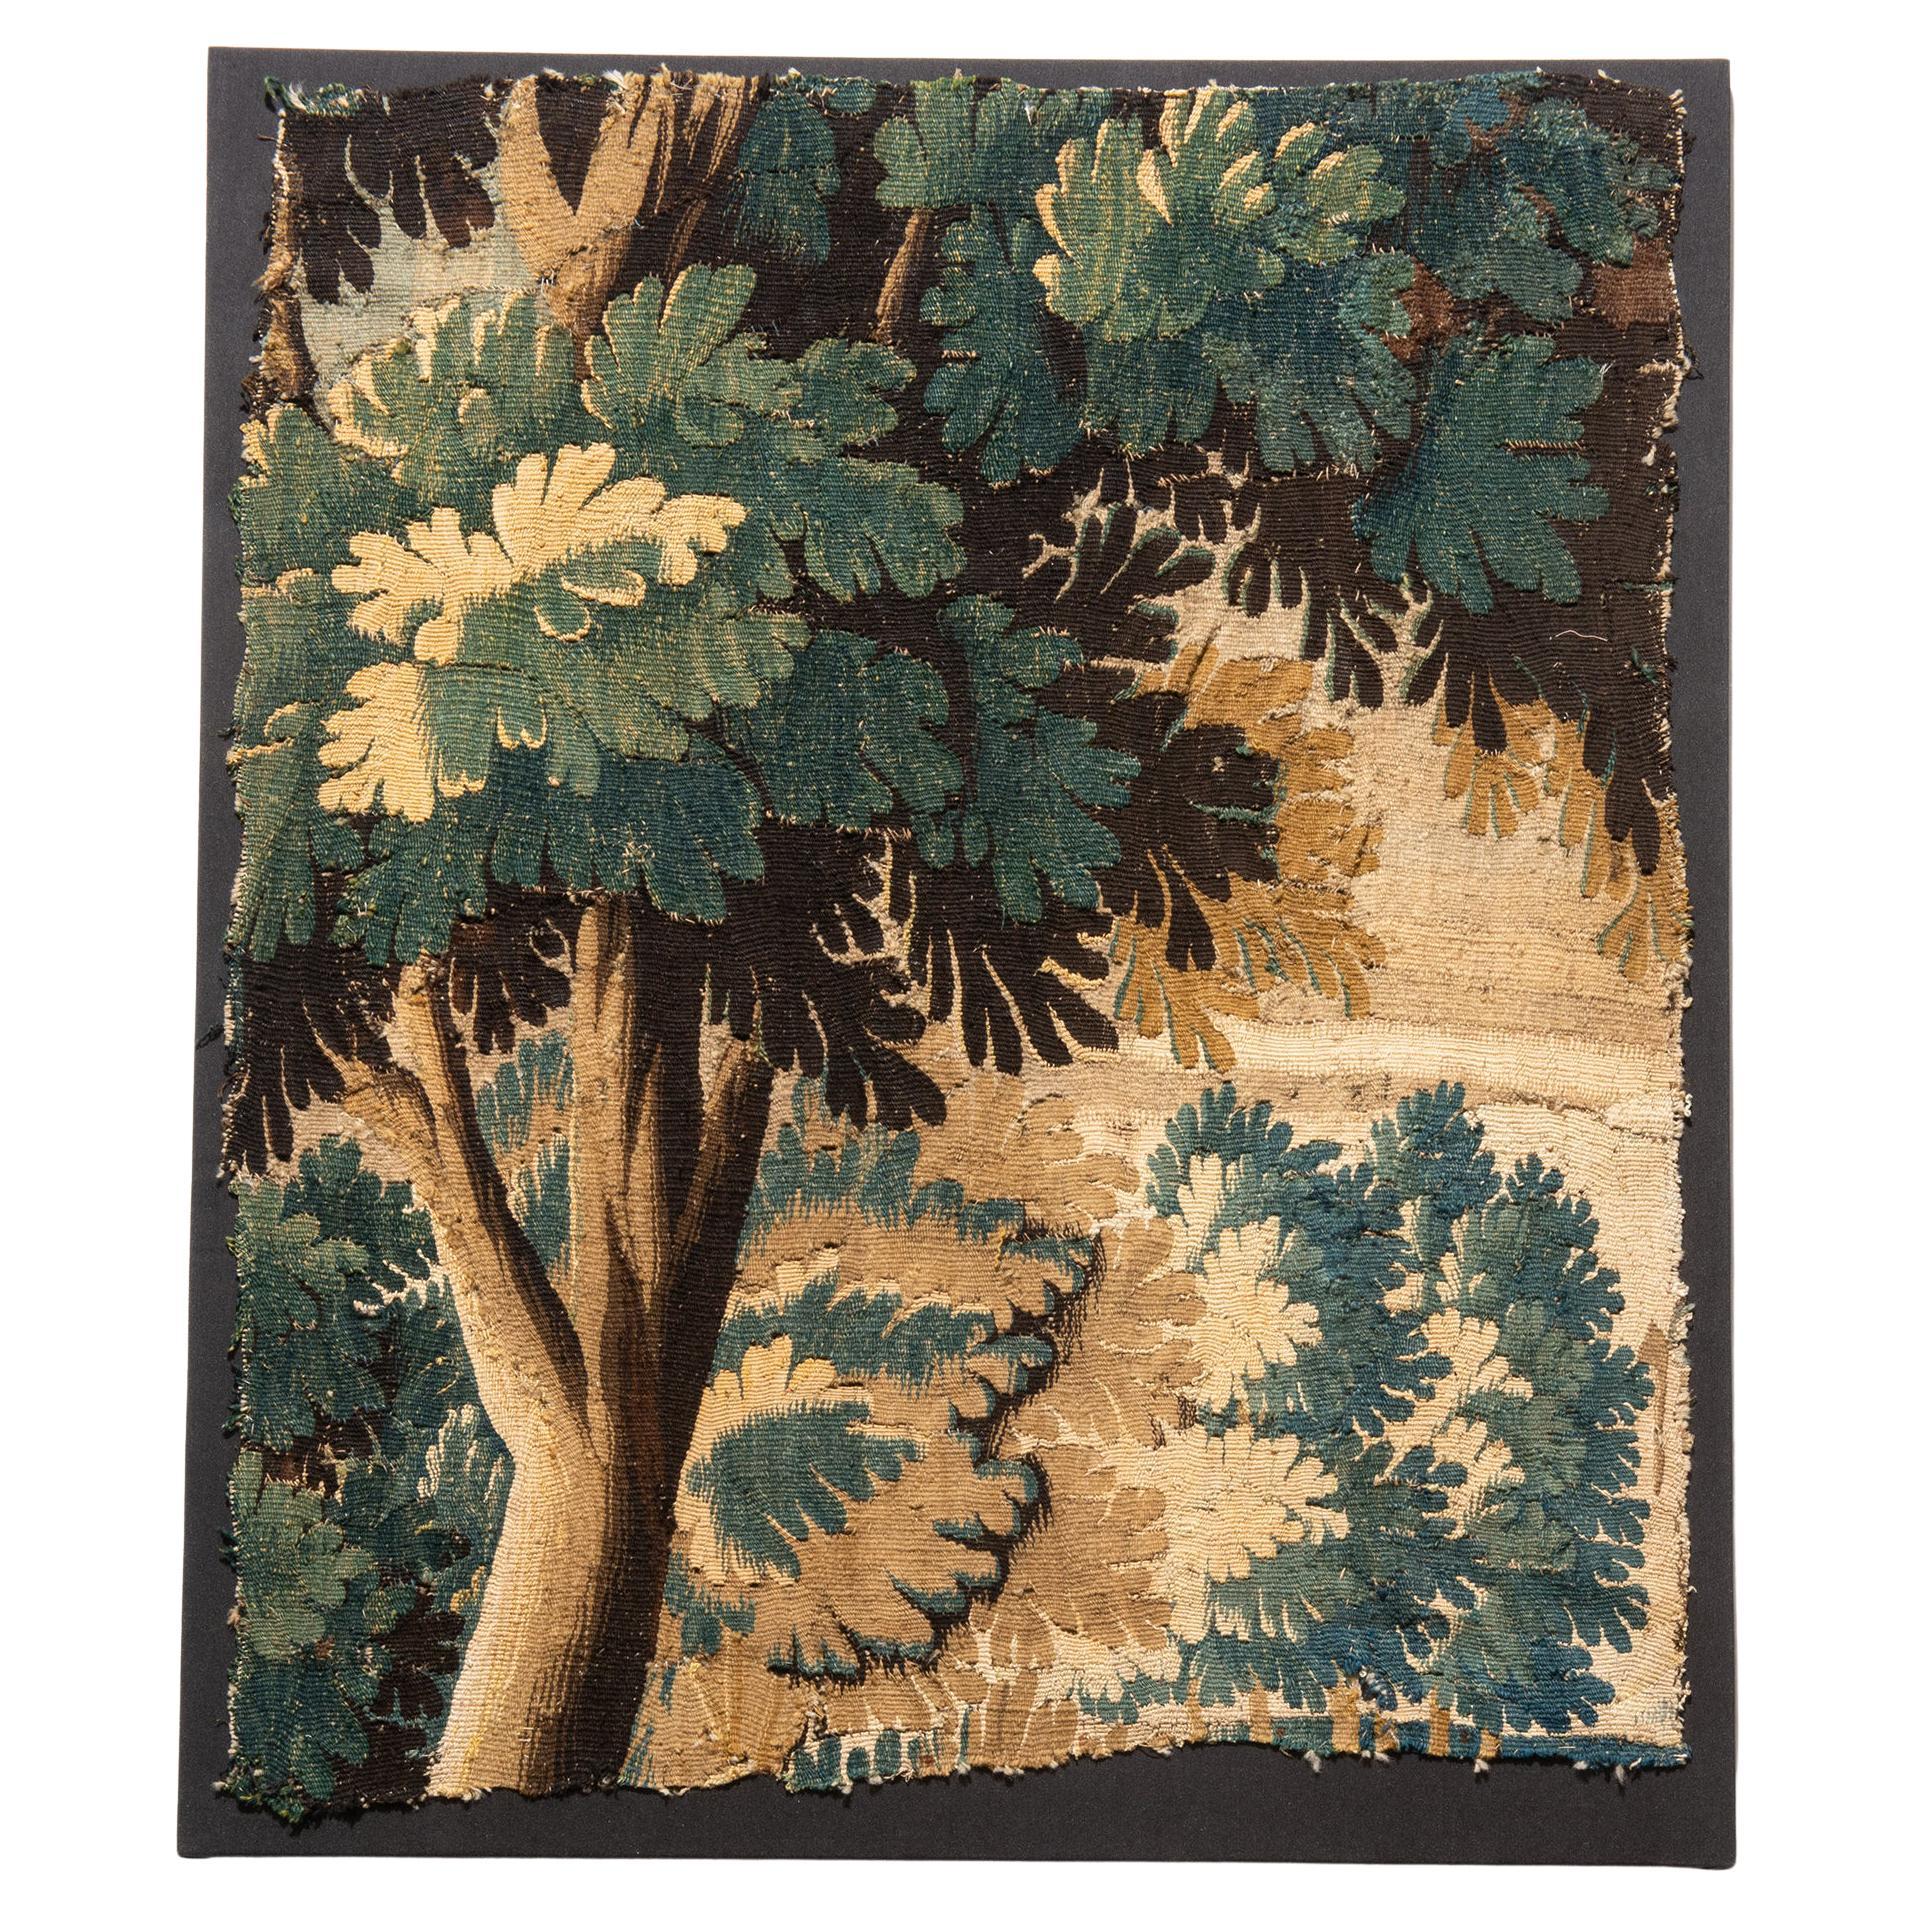 Flemish Verdure Landscape Tapestry Fragment